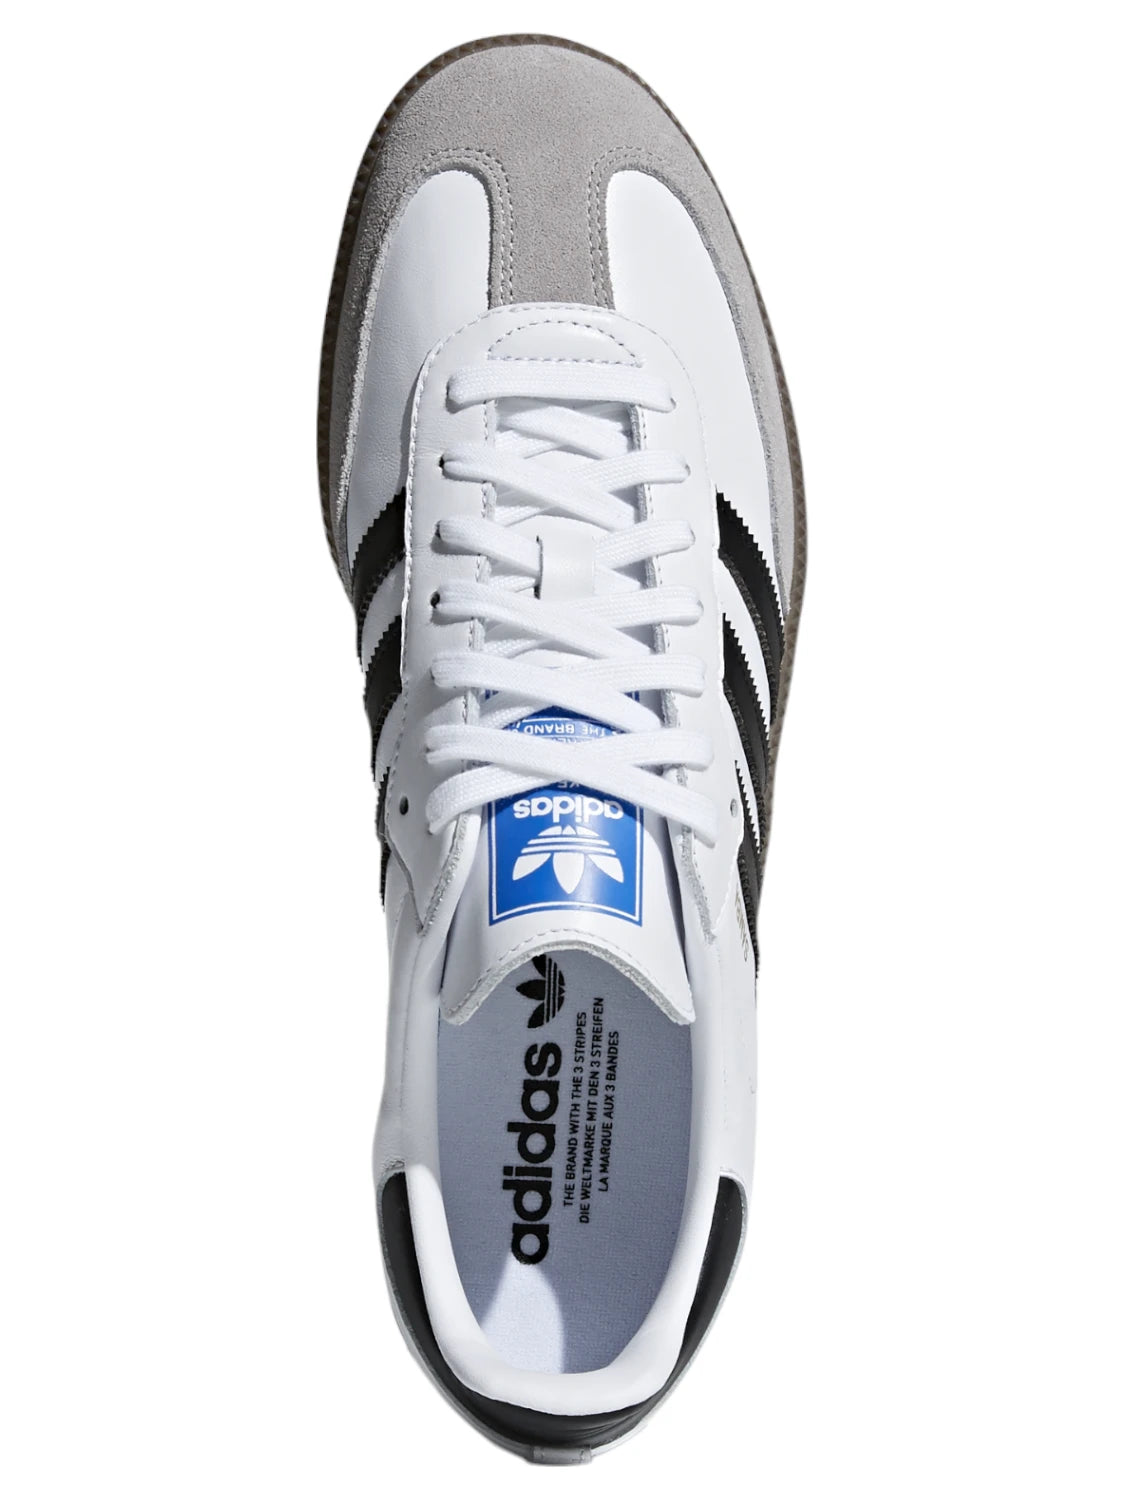 SCARPE SAMBA OG-Adidas Originals-Sneakers-Vittorio Citro Boutique